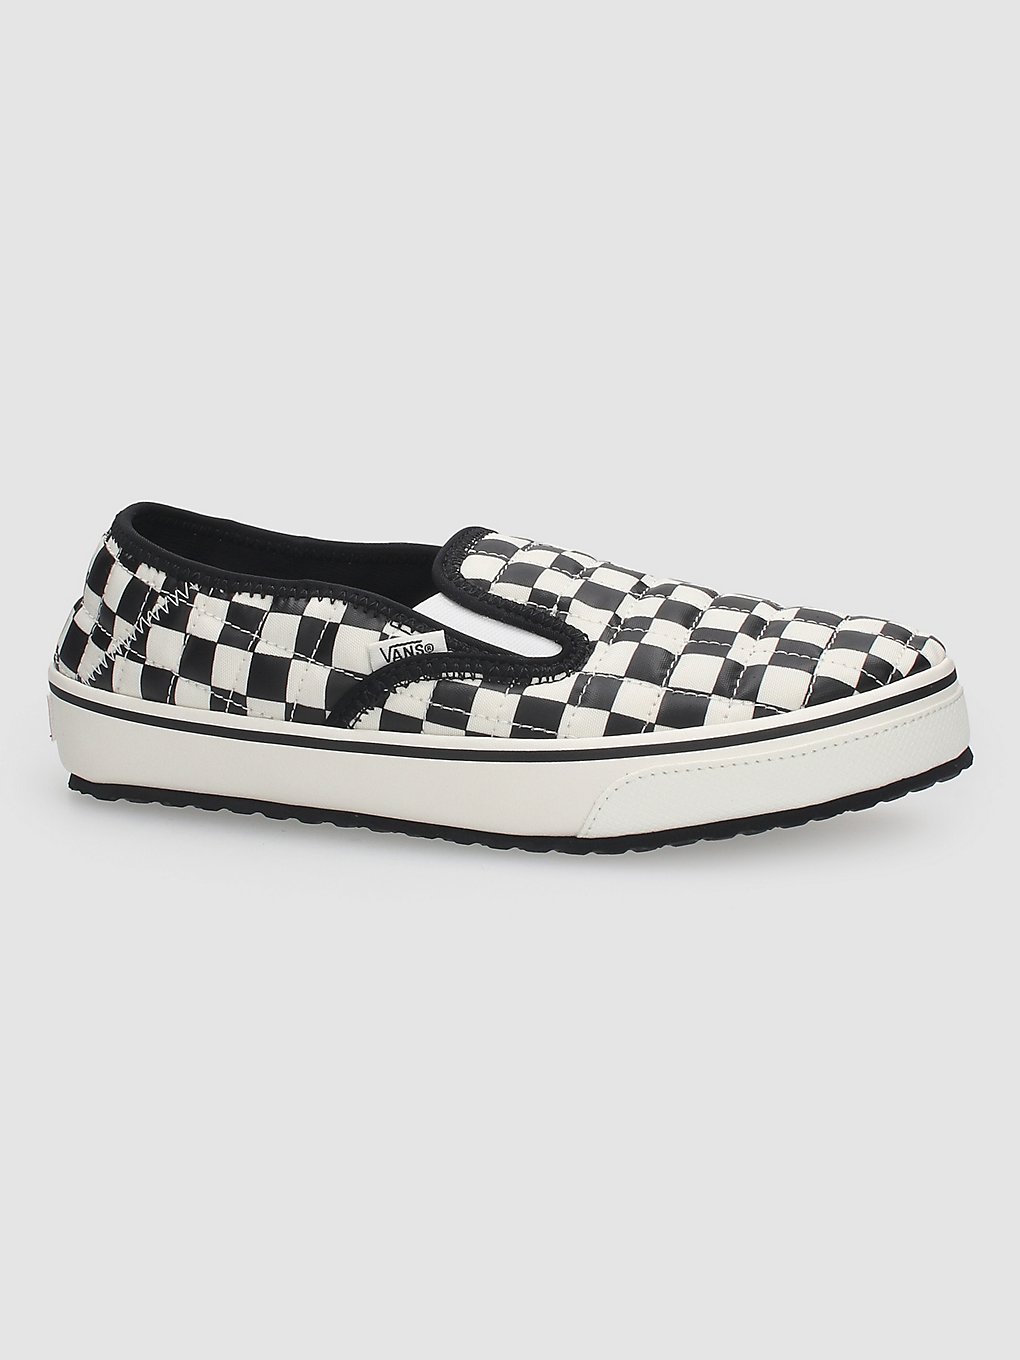 Vans Checkerboard Slip-er 2 Winter schoenen patroon